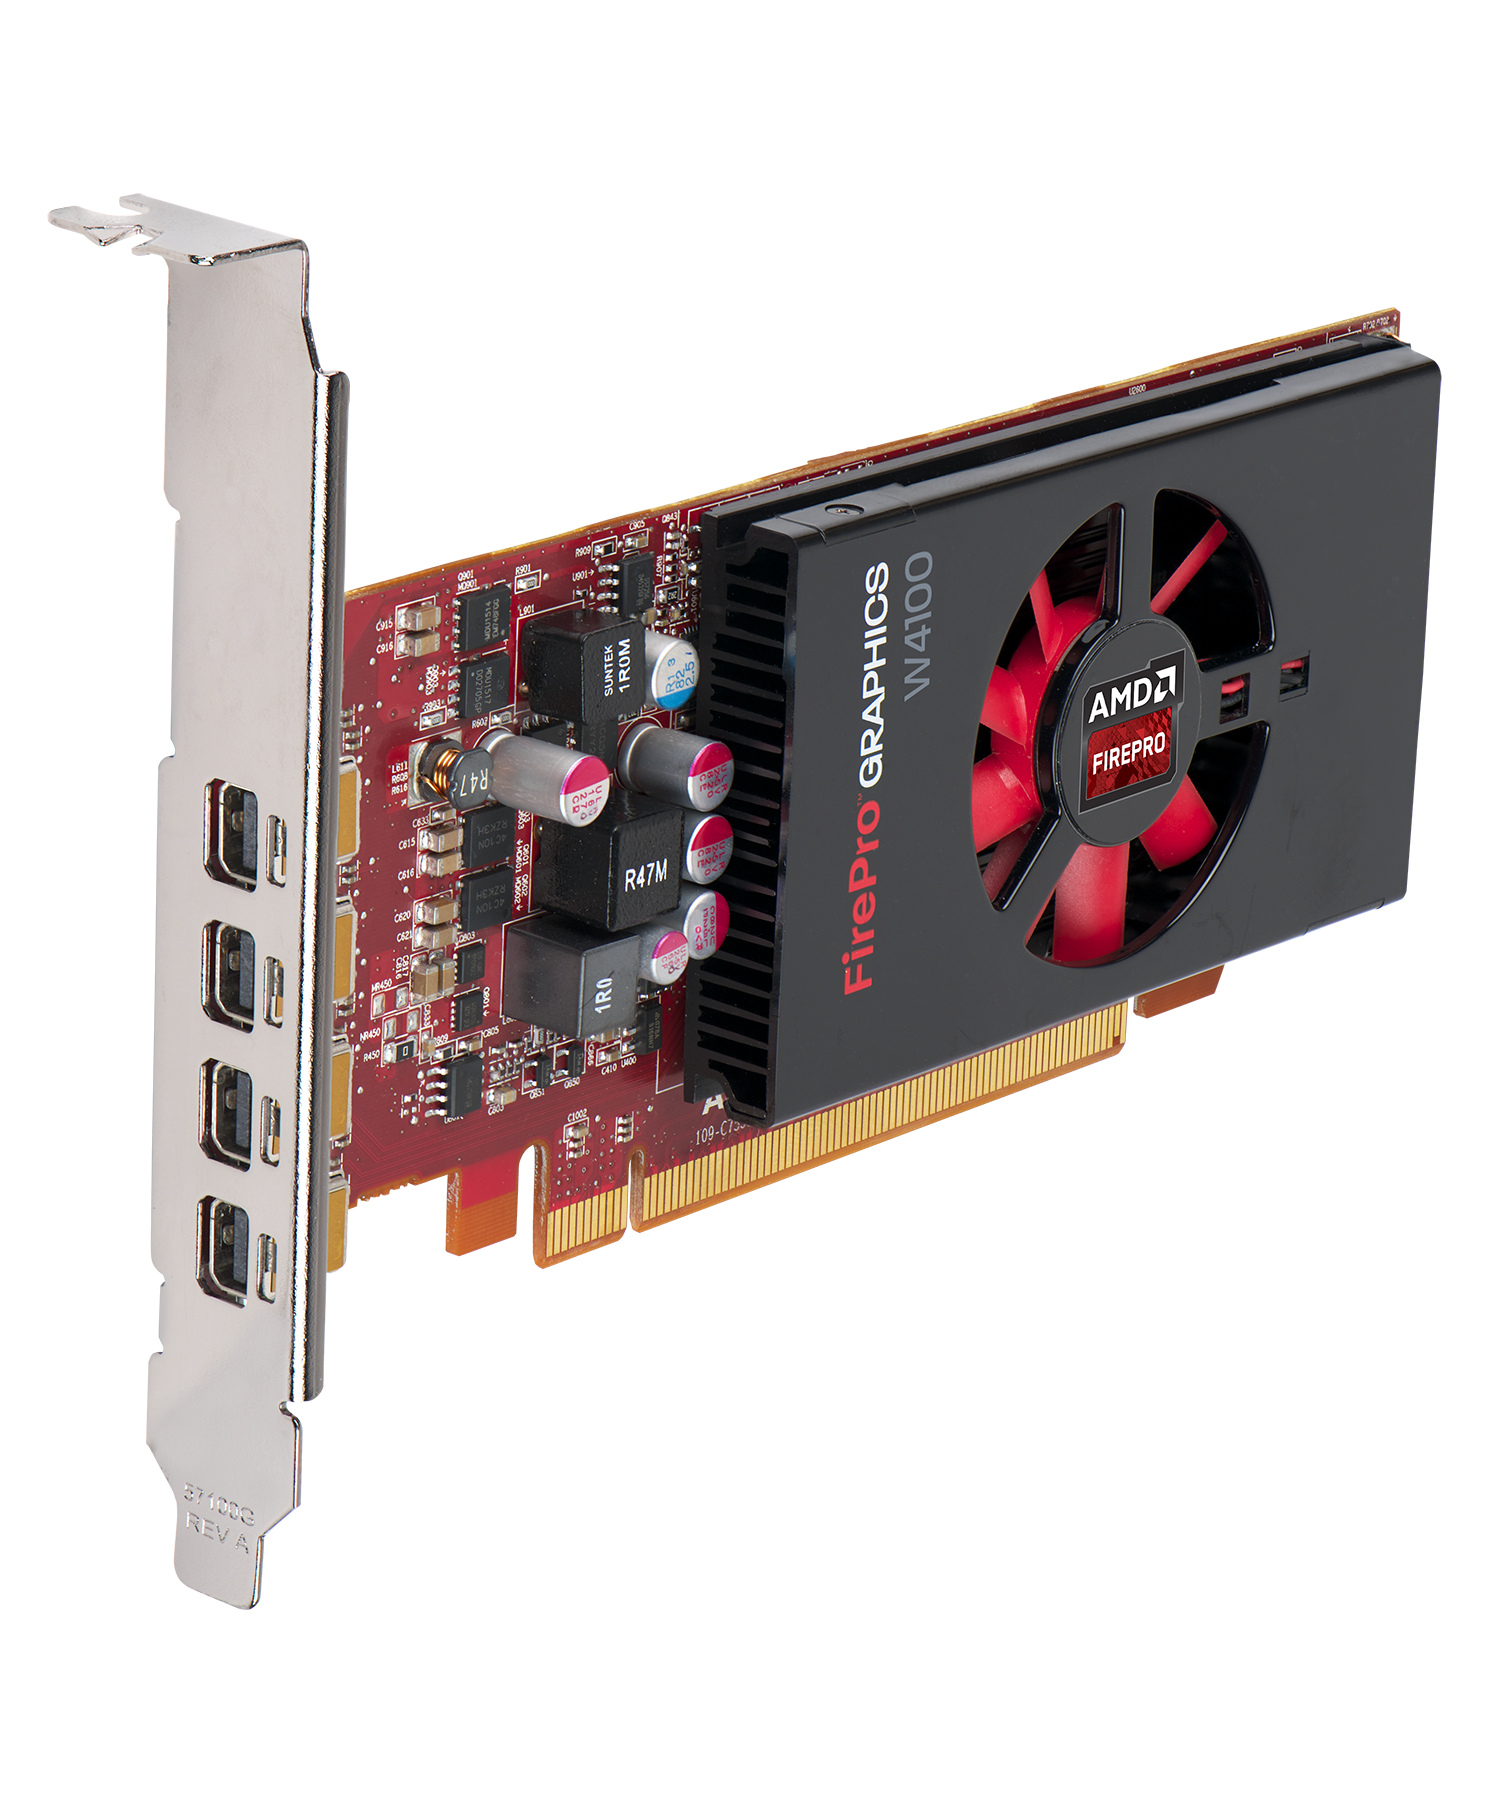 Immagine pubblicata in relazione al seguente contenuto: AMD annuncia le video card FirePro W7100, W5100, W4100 e W2100 | Nome immagine: news21488_AMD-FirePro-W4100_1.png